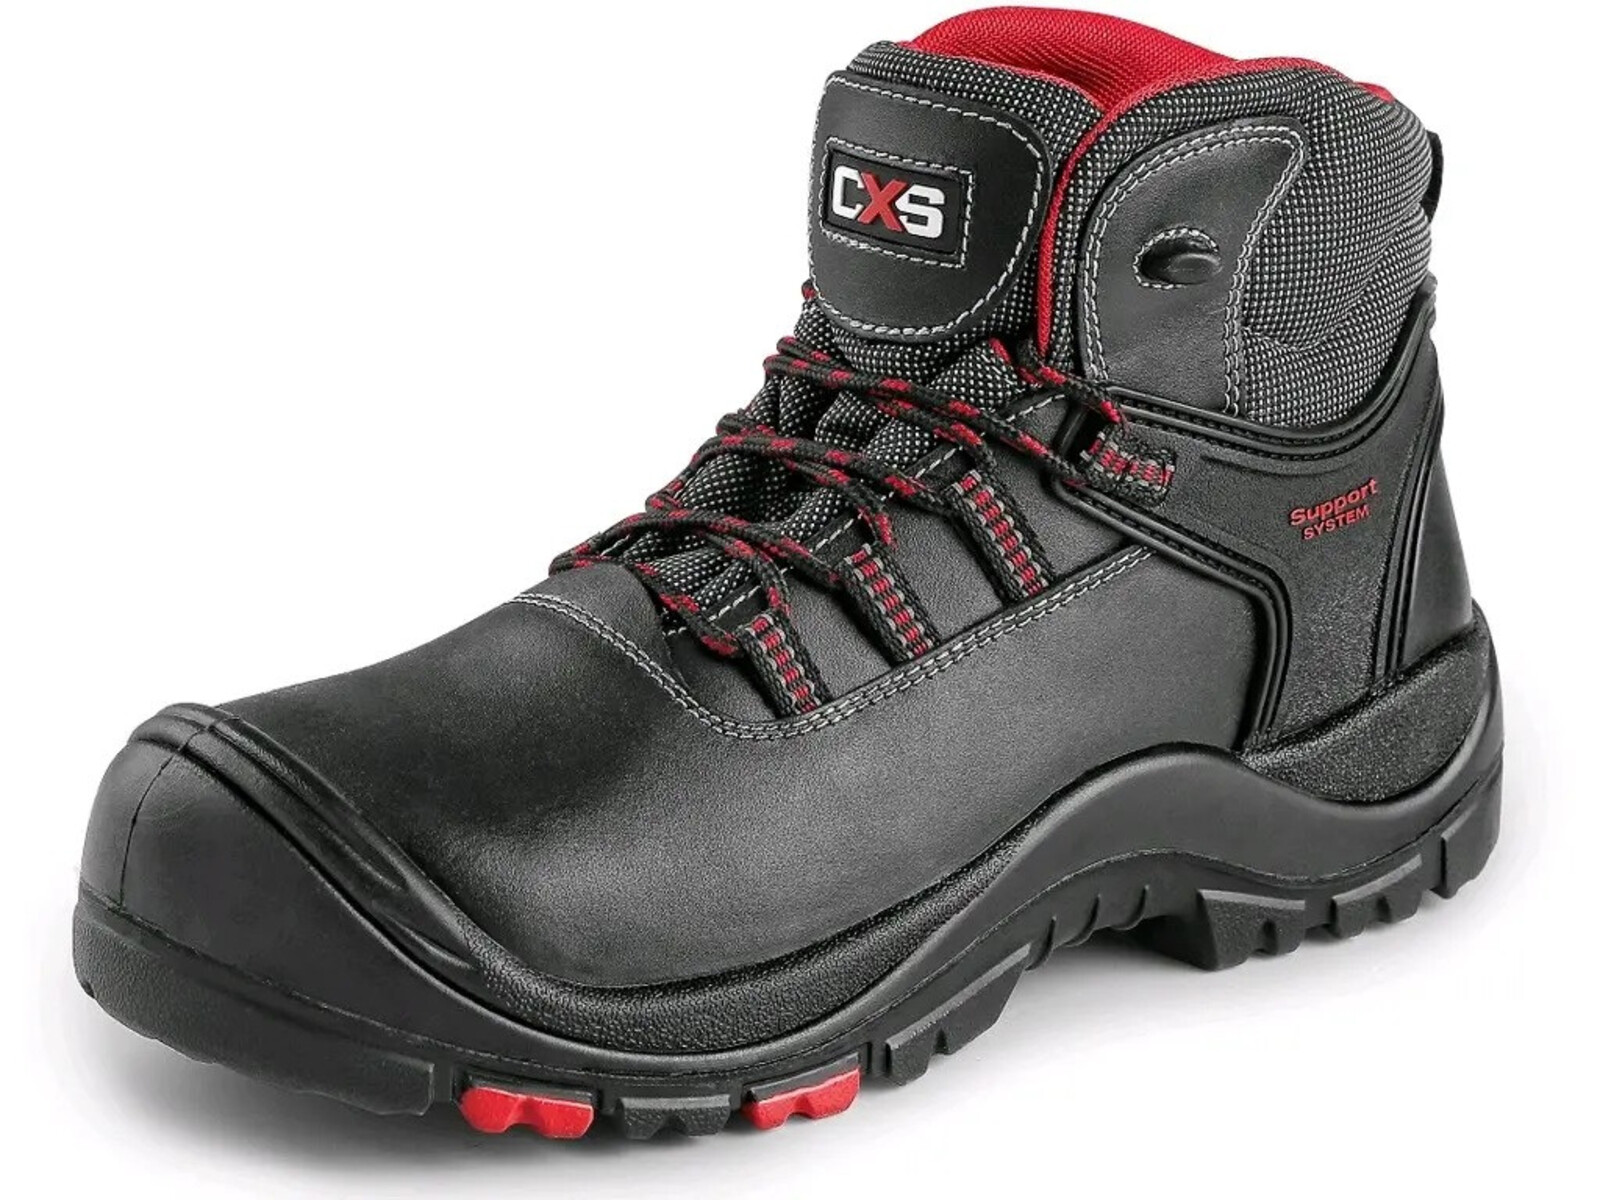 Bezpečnostná členková obuv CXS Rock Granite S3 SRC HRO MF - veľkosť: 39, farba: čierna/červená